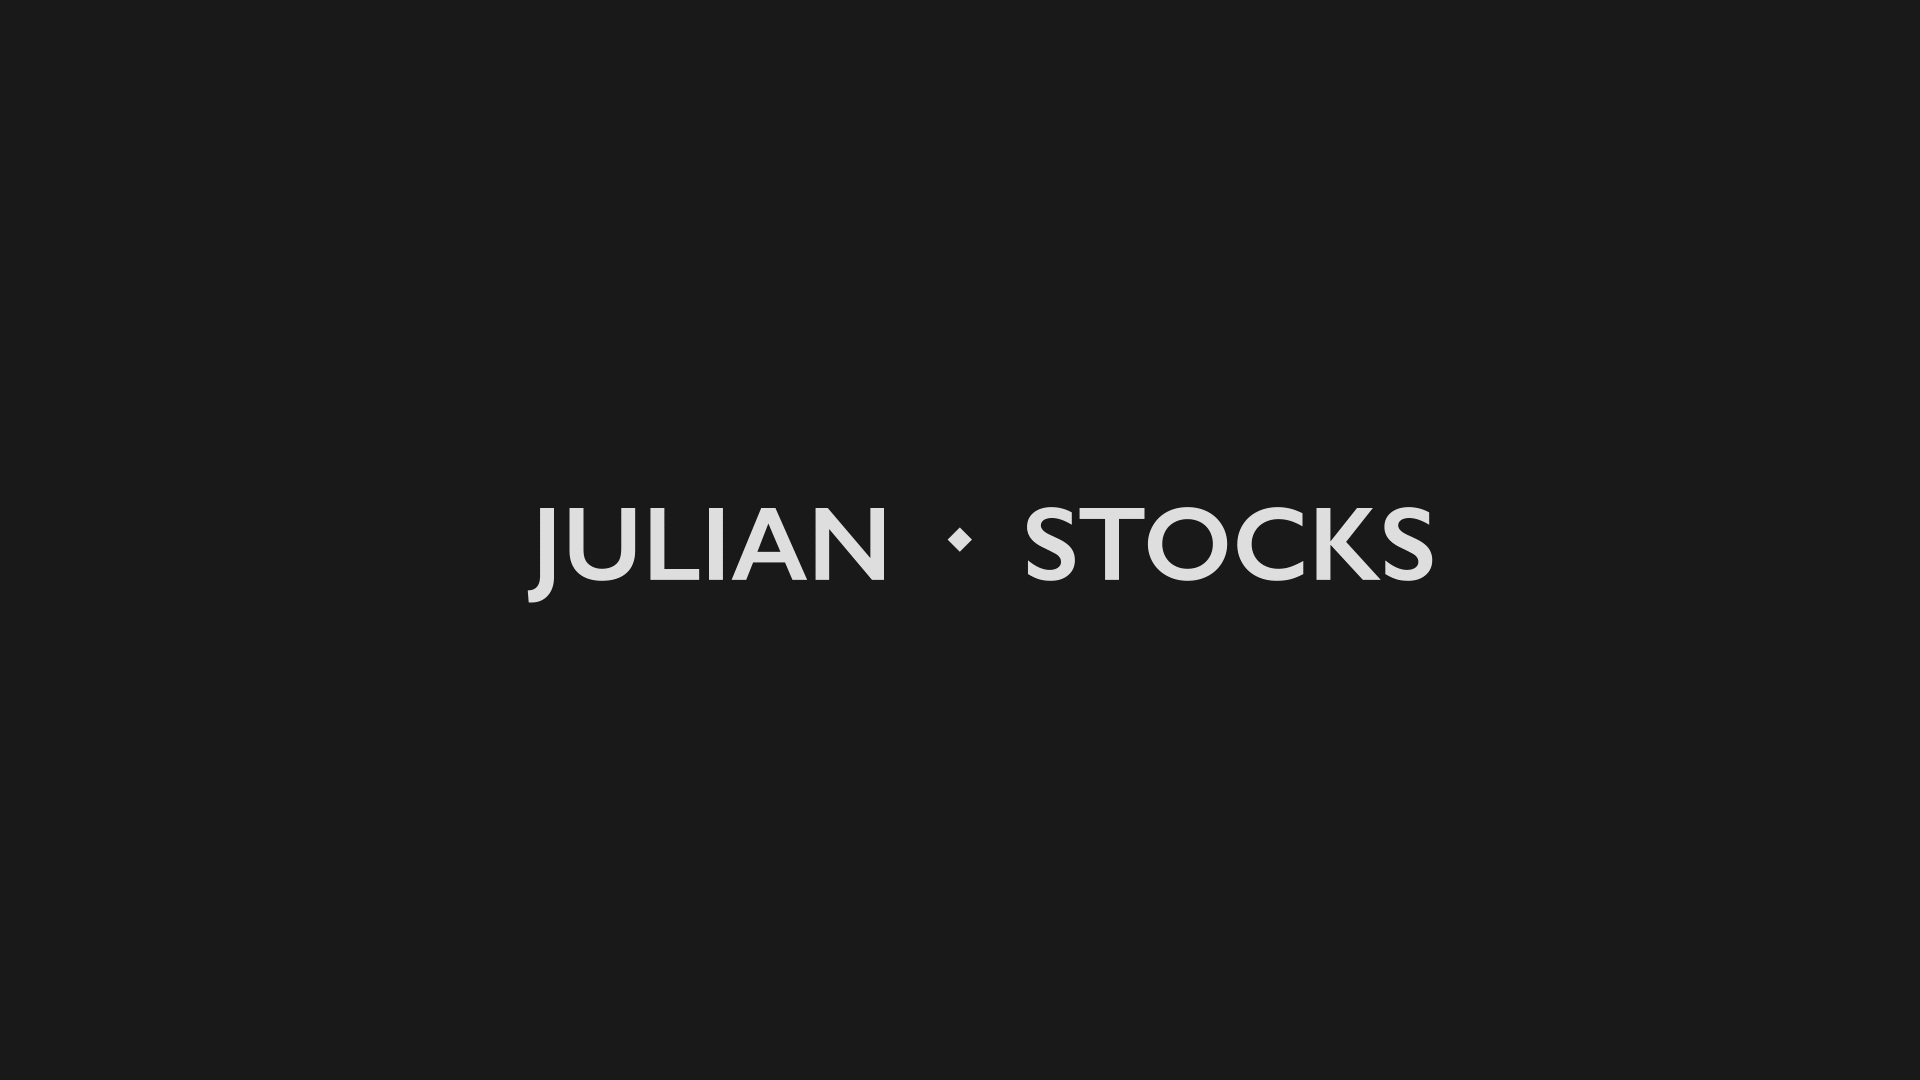 julian stocks